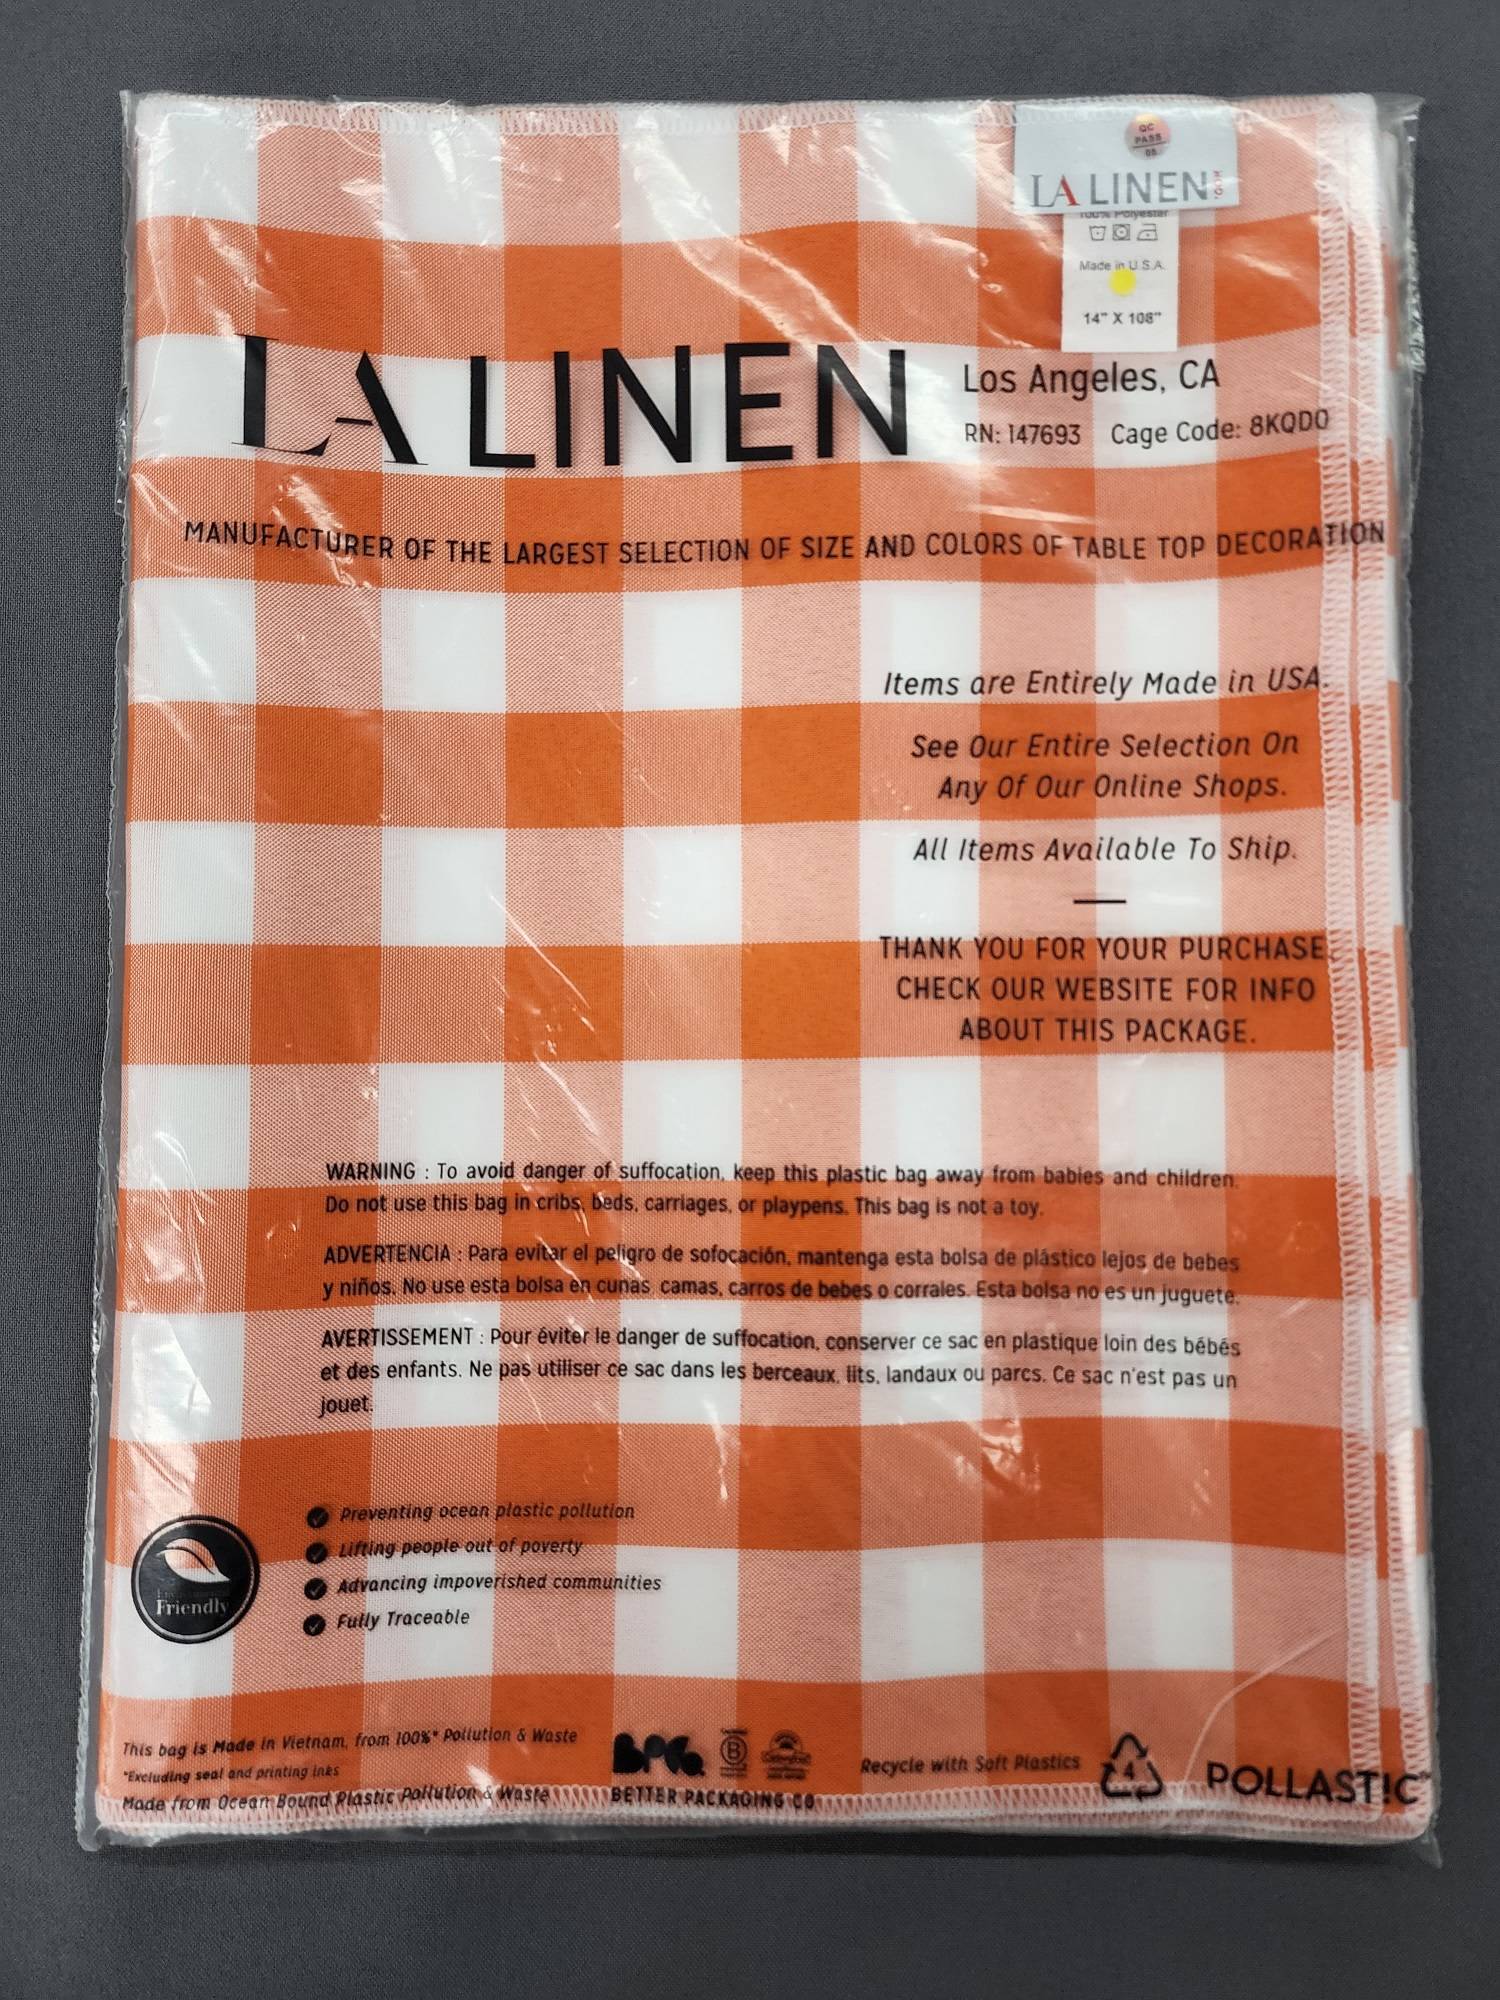 LA Linen product packaging enviromental friendly